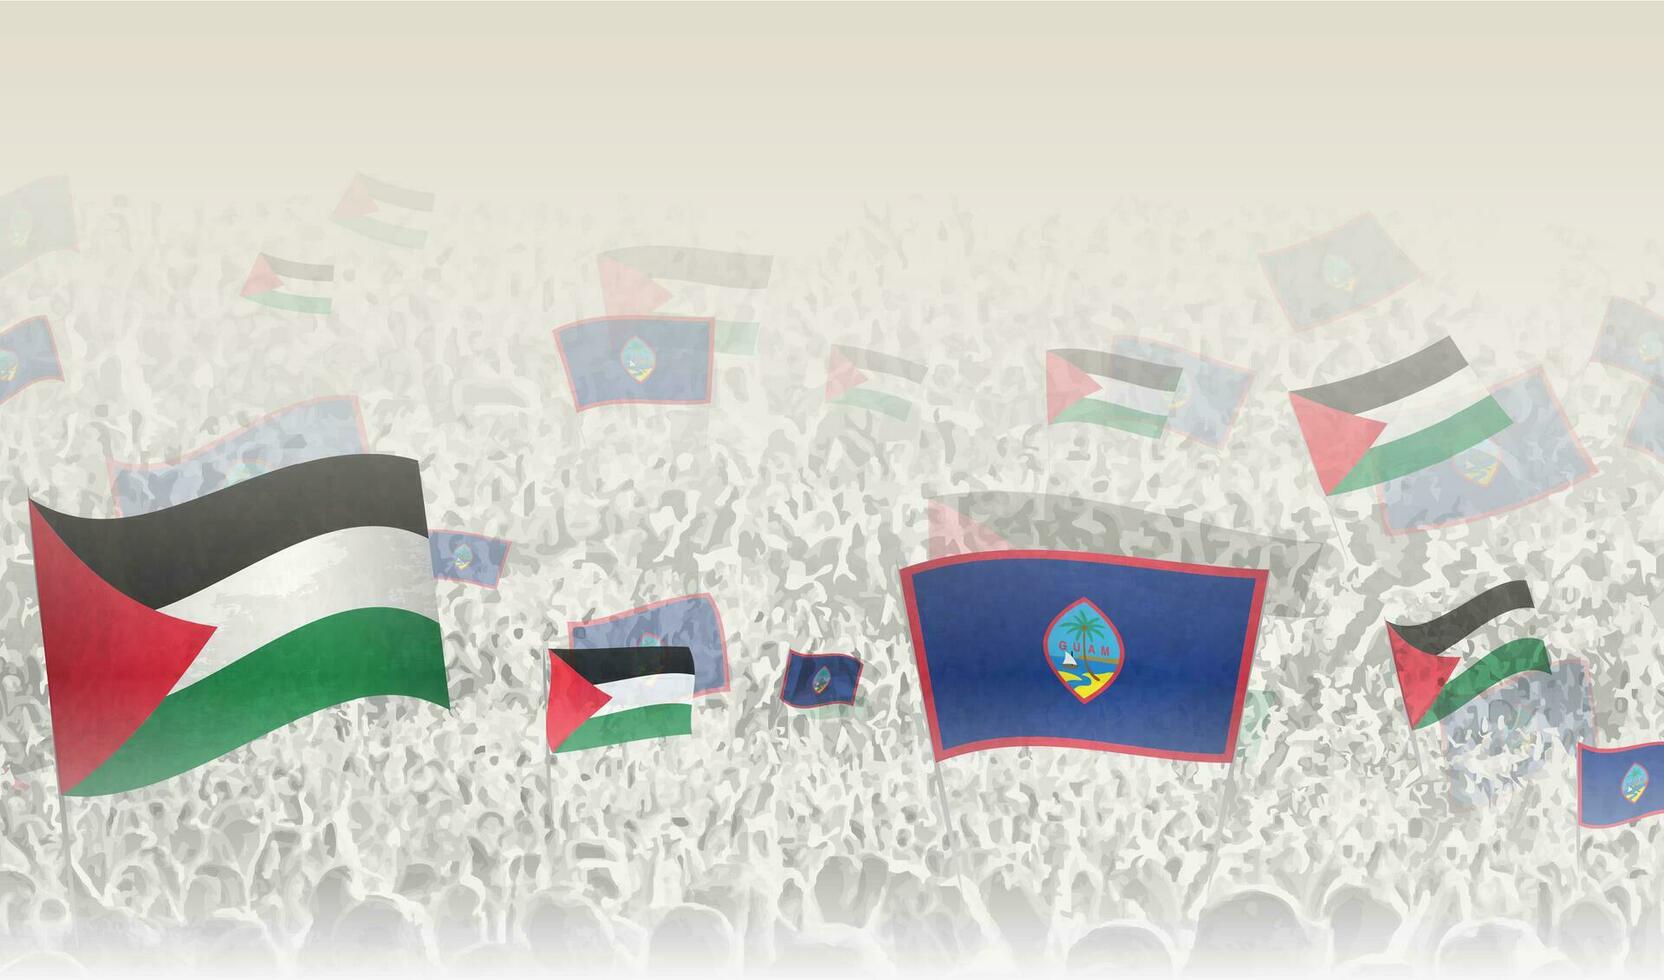 Palästina und guam Flaggen im ein Menge von Jubel Personen. vektor